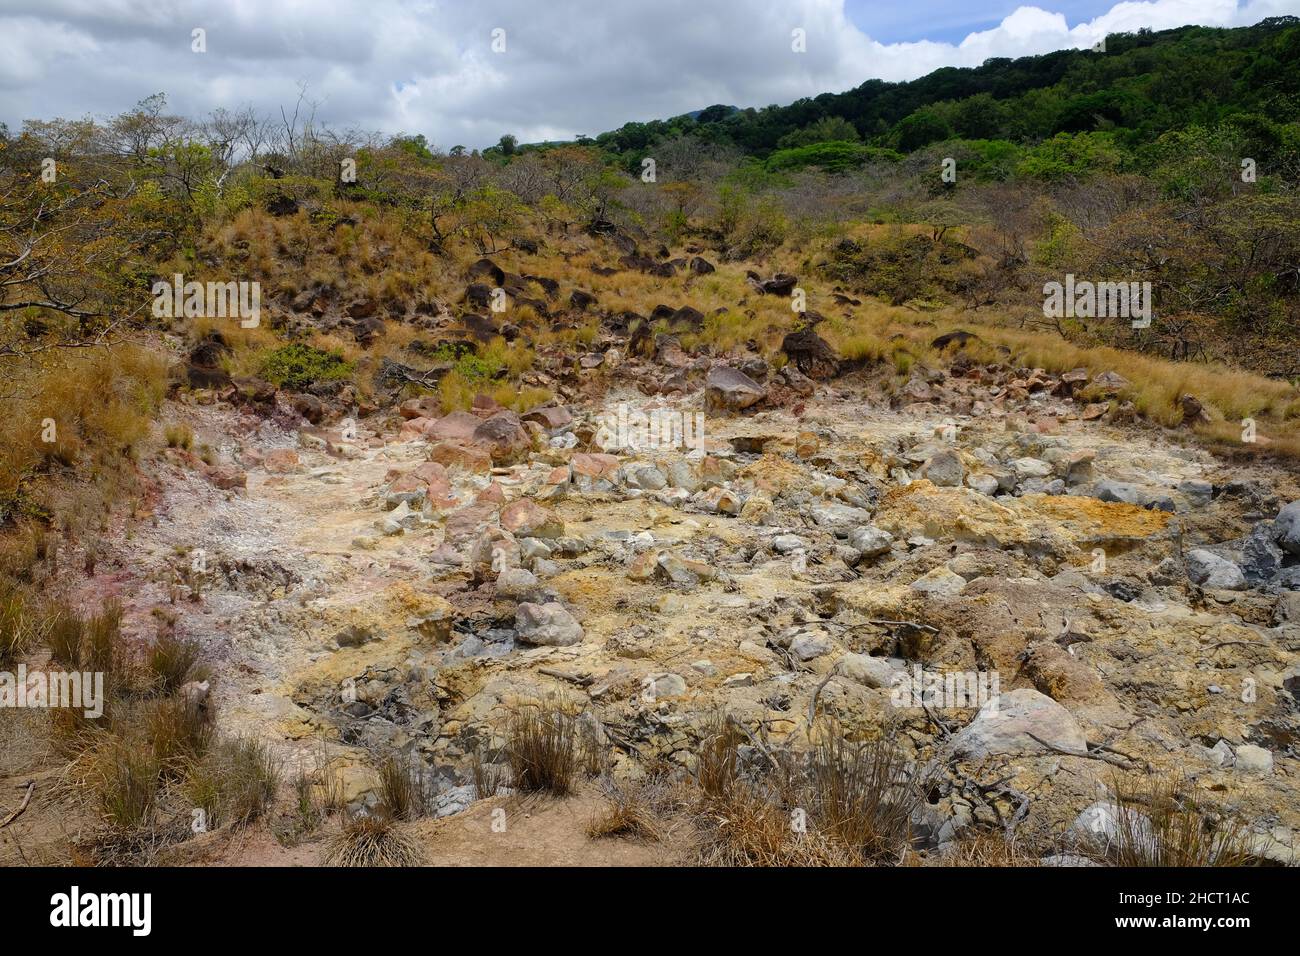 Parc national du Costa Rica Rincon de la Vieja - pots de boue bouillante volcanique - évents à soufre - sources de soufre Banque D'Images